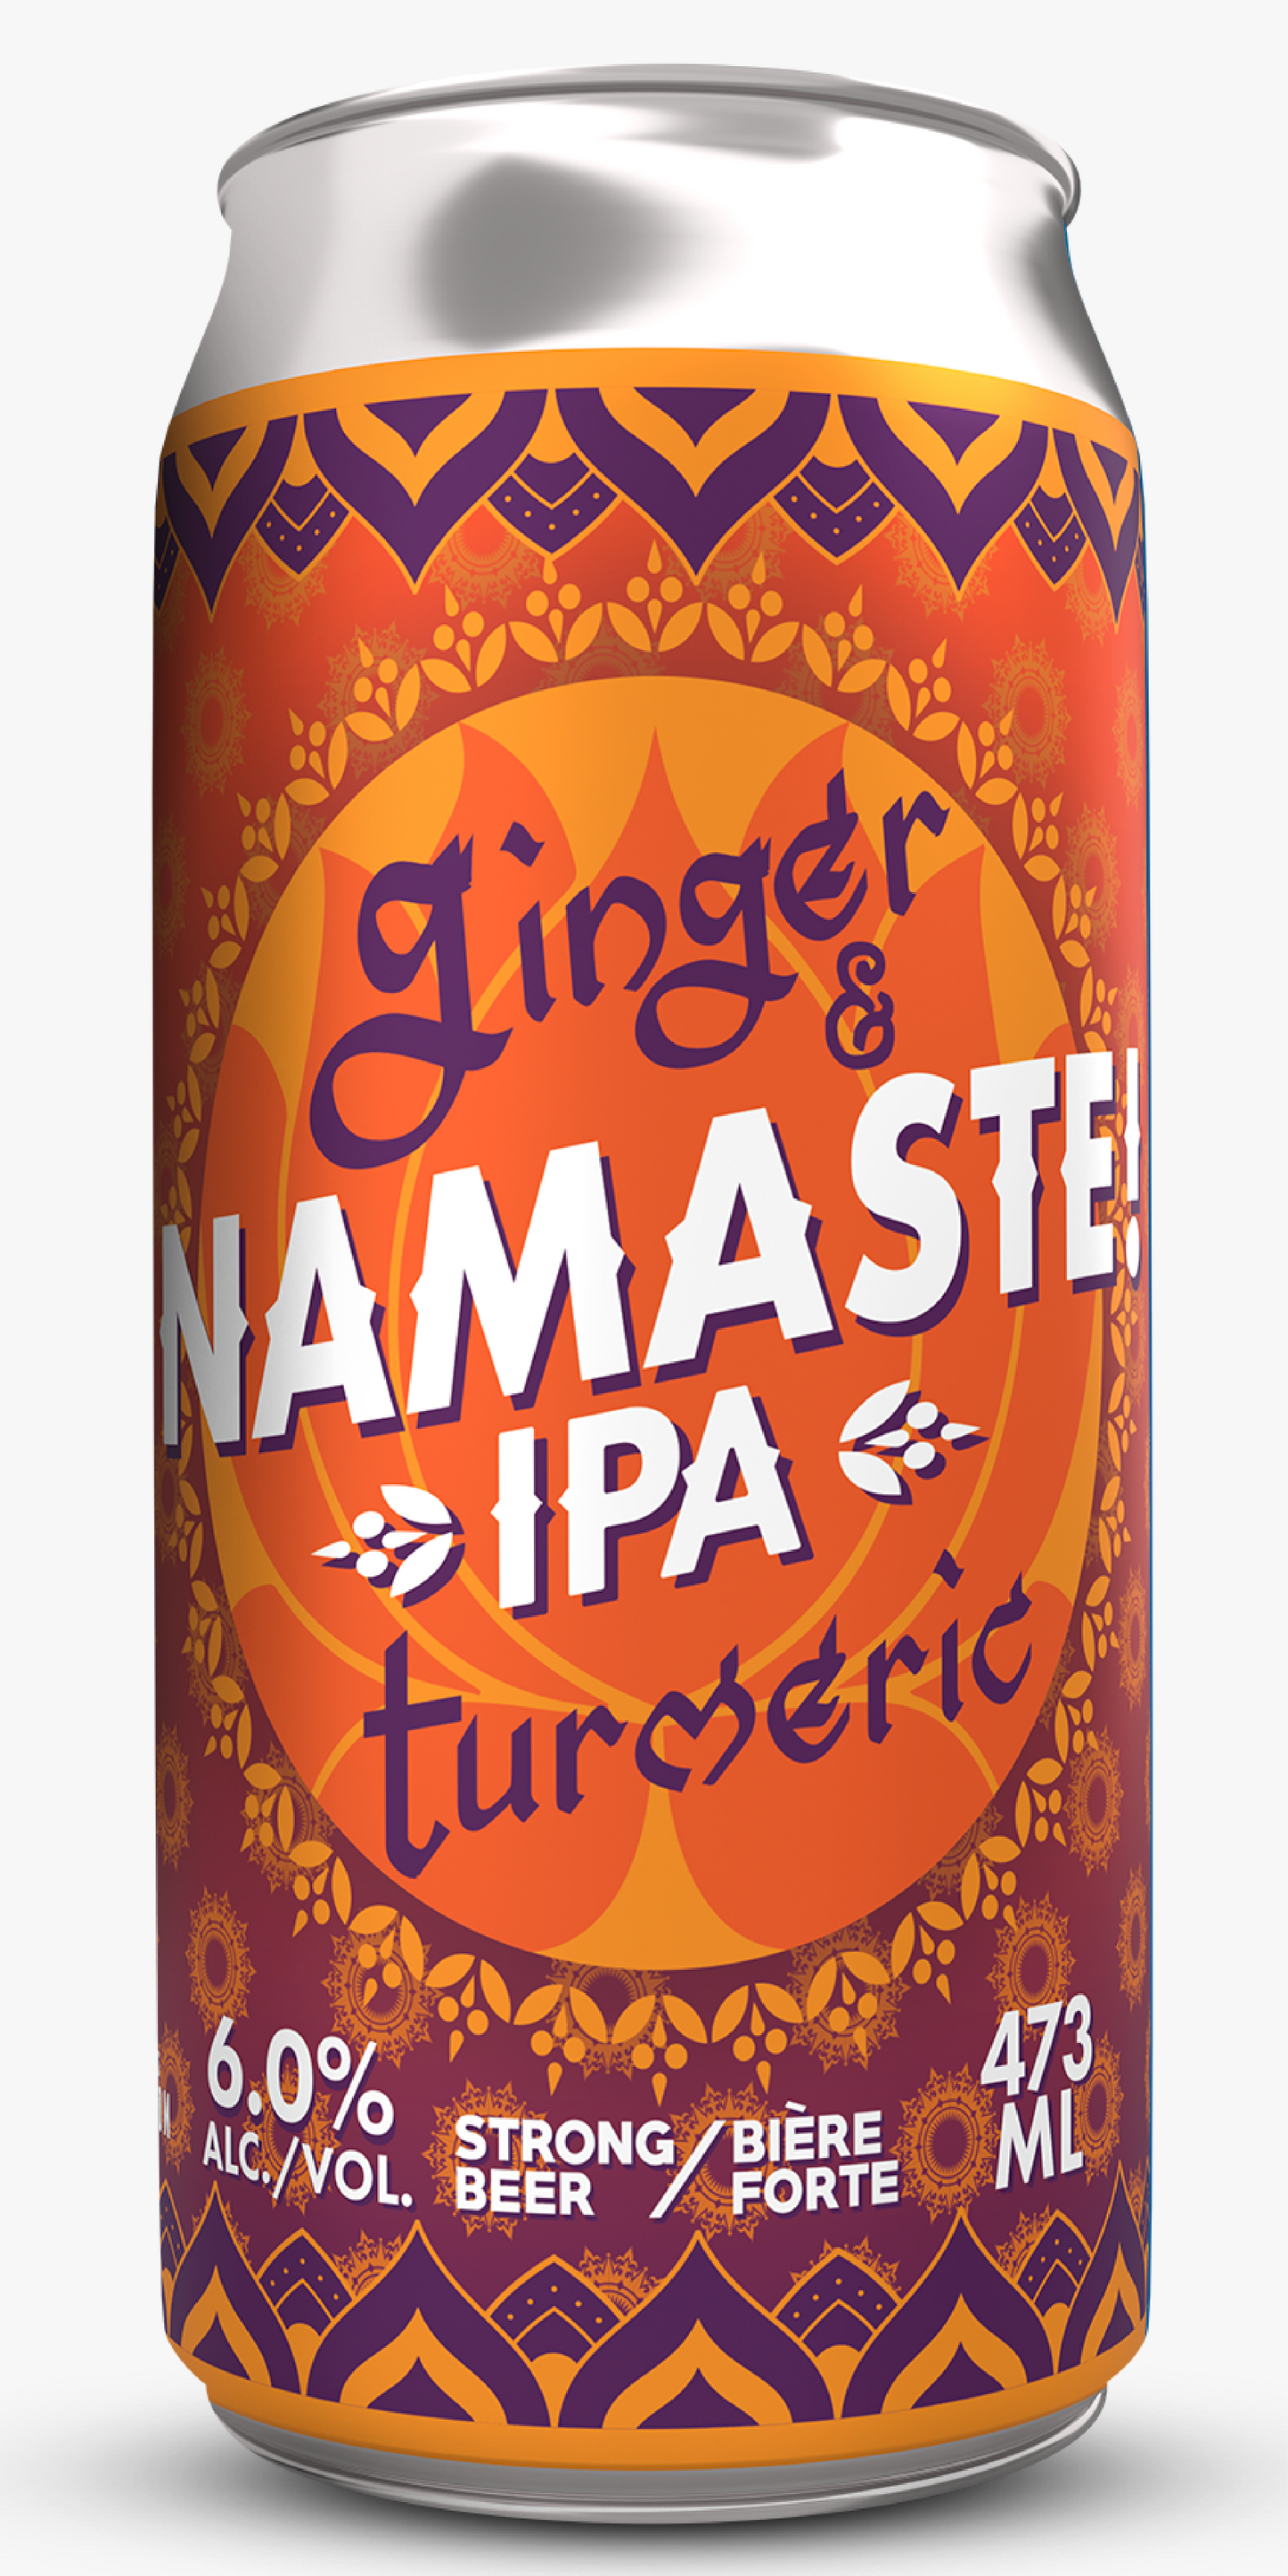 Namaste IPA: Single 473ml can